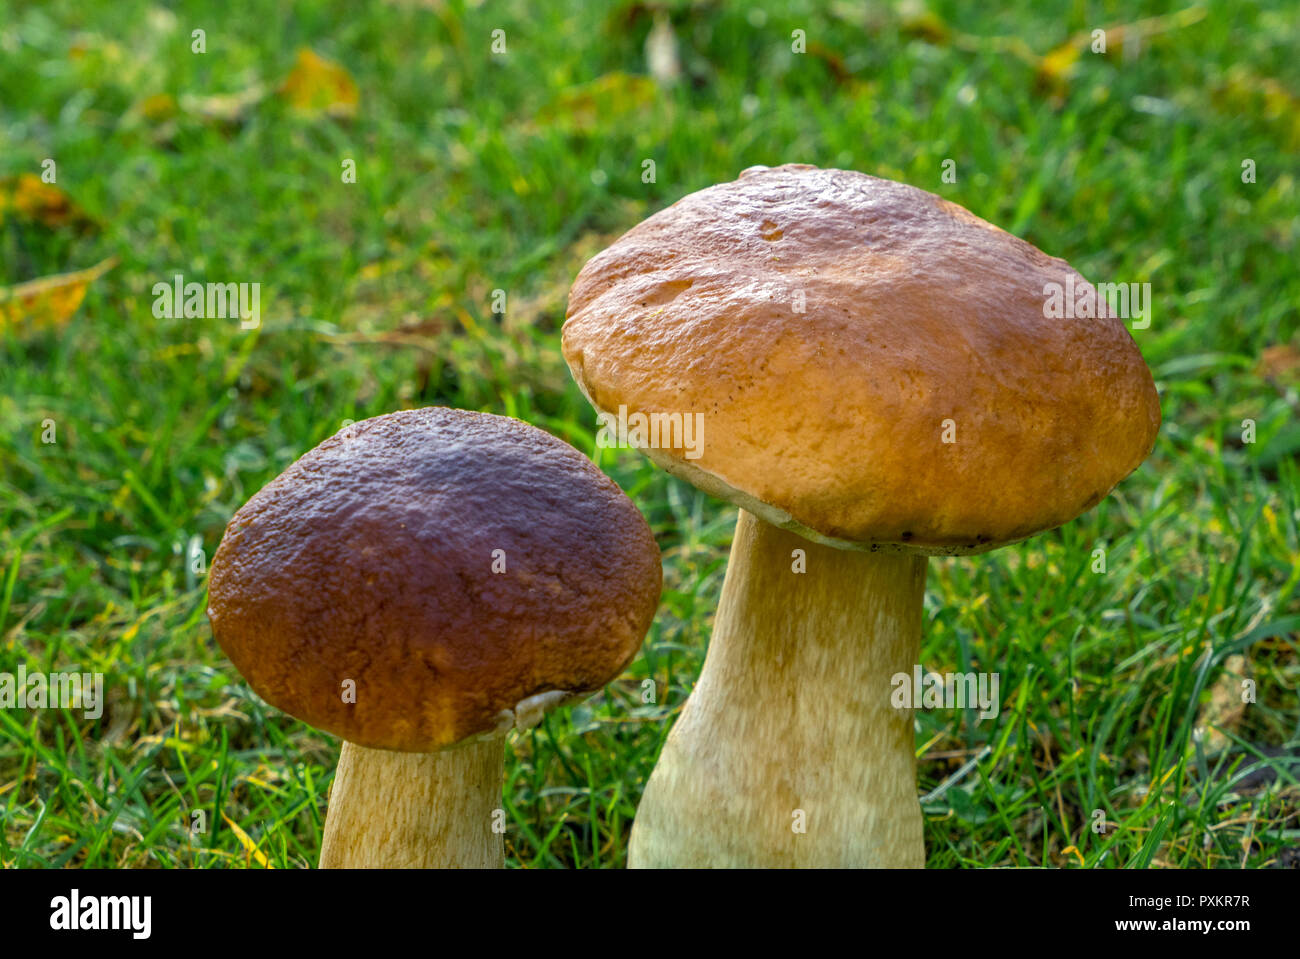 Funghi porcini o funghi porcini (Boletus edulis), funghi commestibili Foto Stock